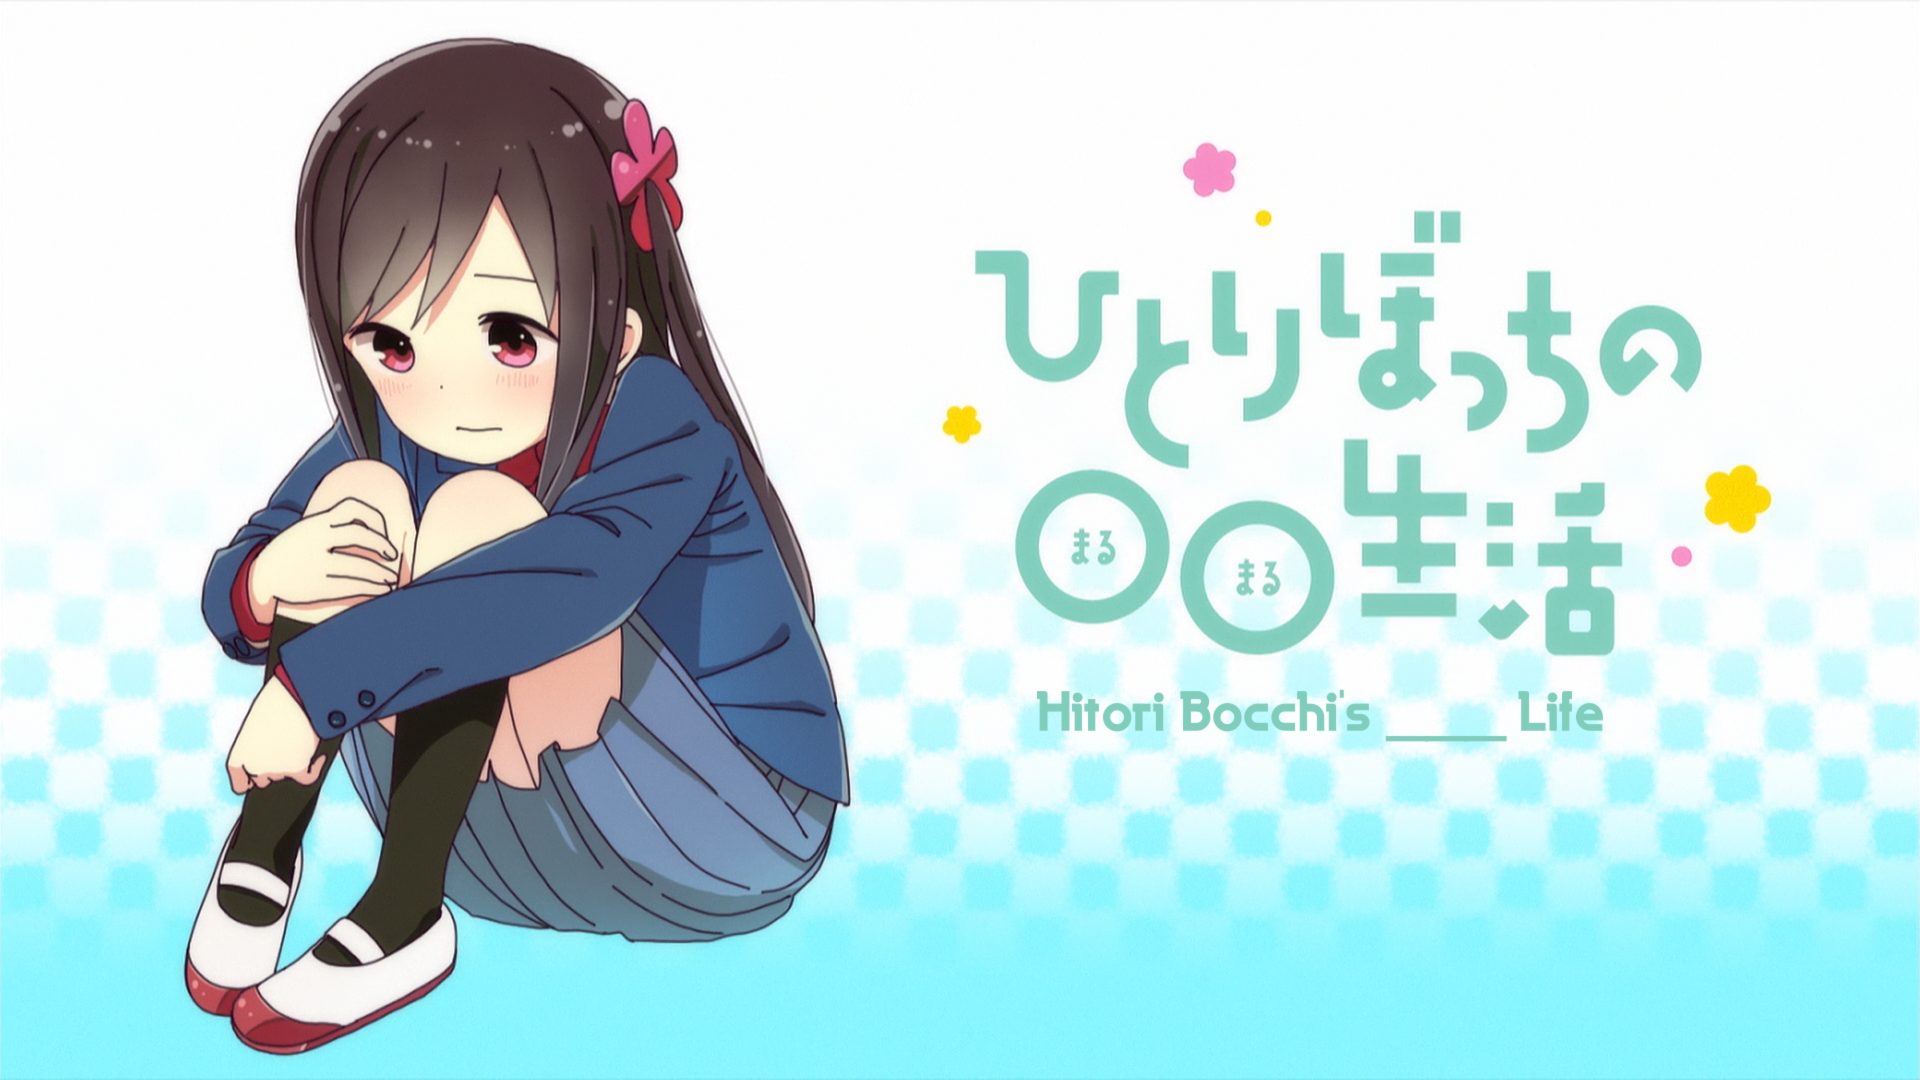 Hitori Bocchi no Marumaru Seikatsu DVD Complete Edition